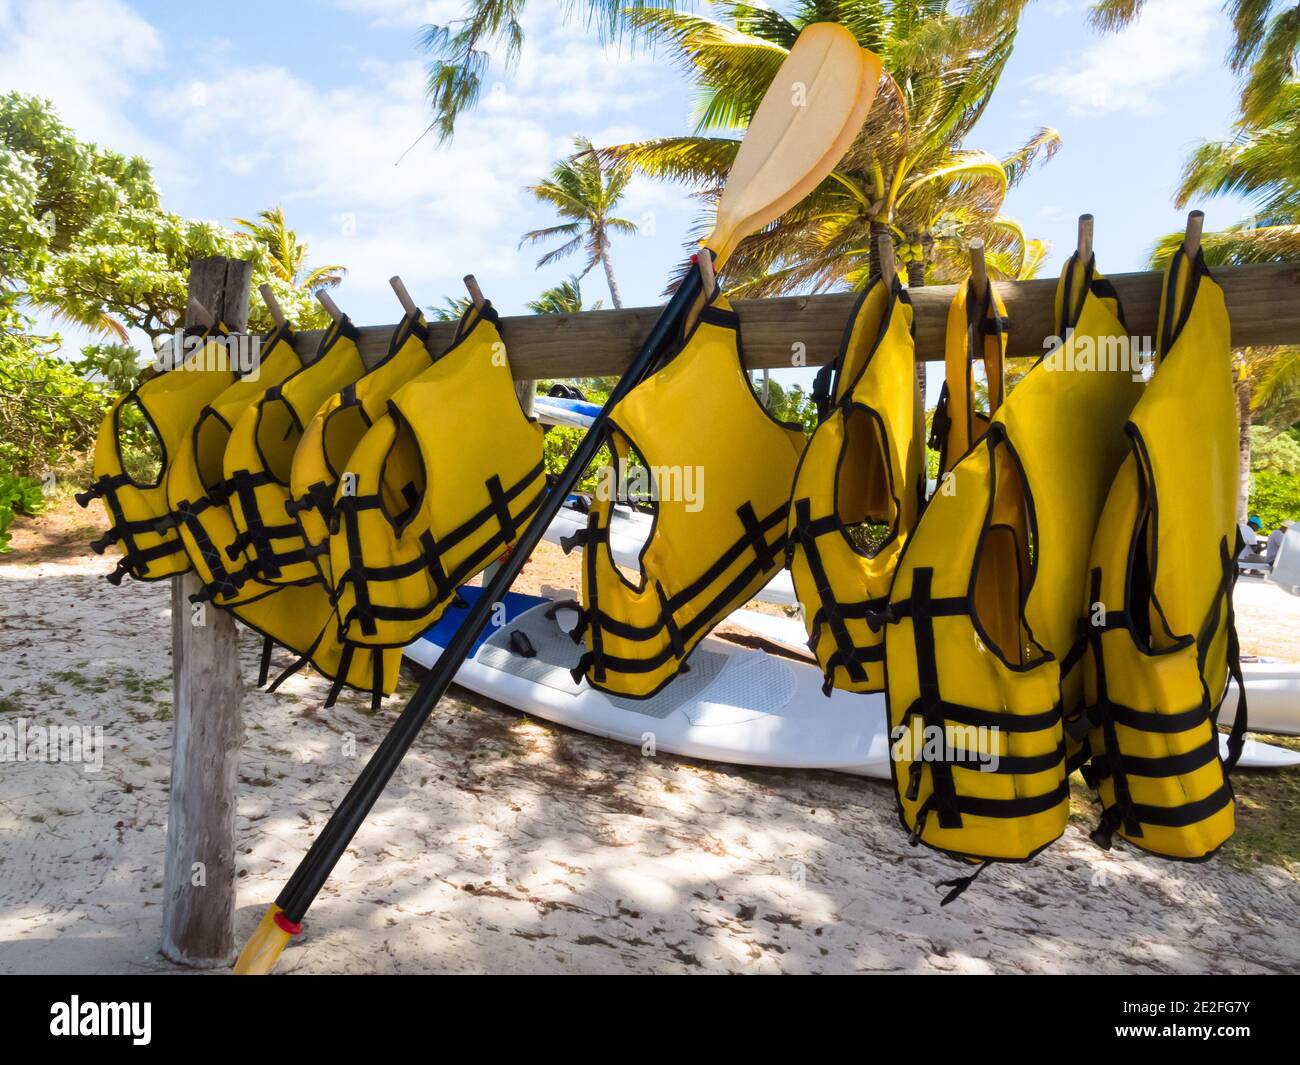 Gilets de sauvetage jaunes ou gilets de sauvetage suspendus sur un bois pôle sur une plage de sable blanc tropical sur l'île De Maurice concept de loisirs ou de sport Banque D'Images